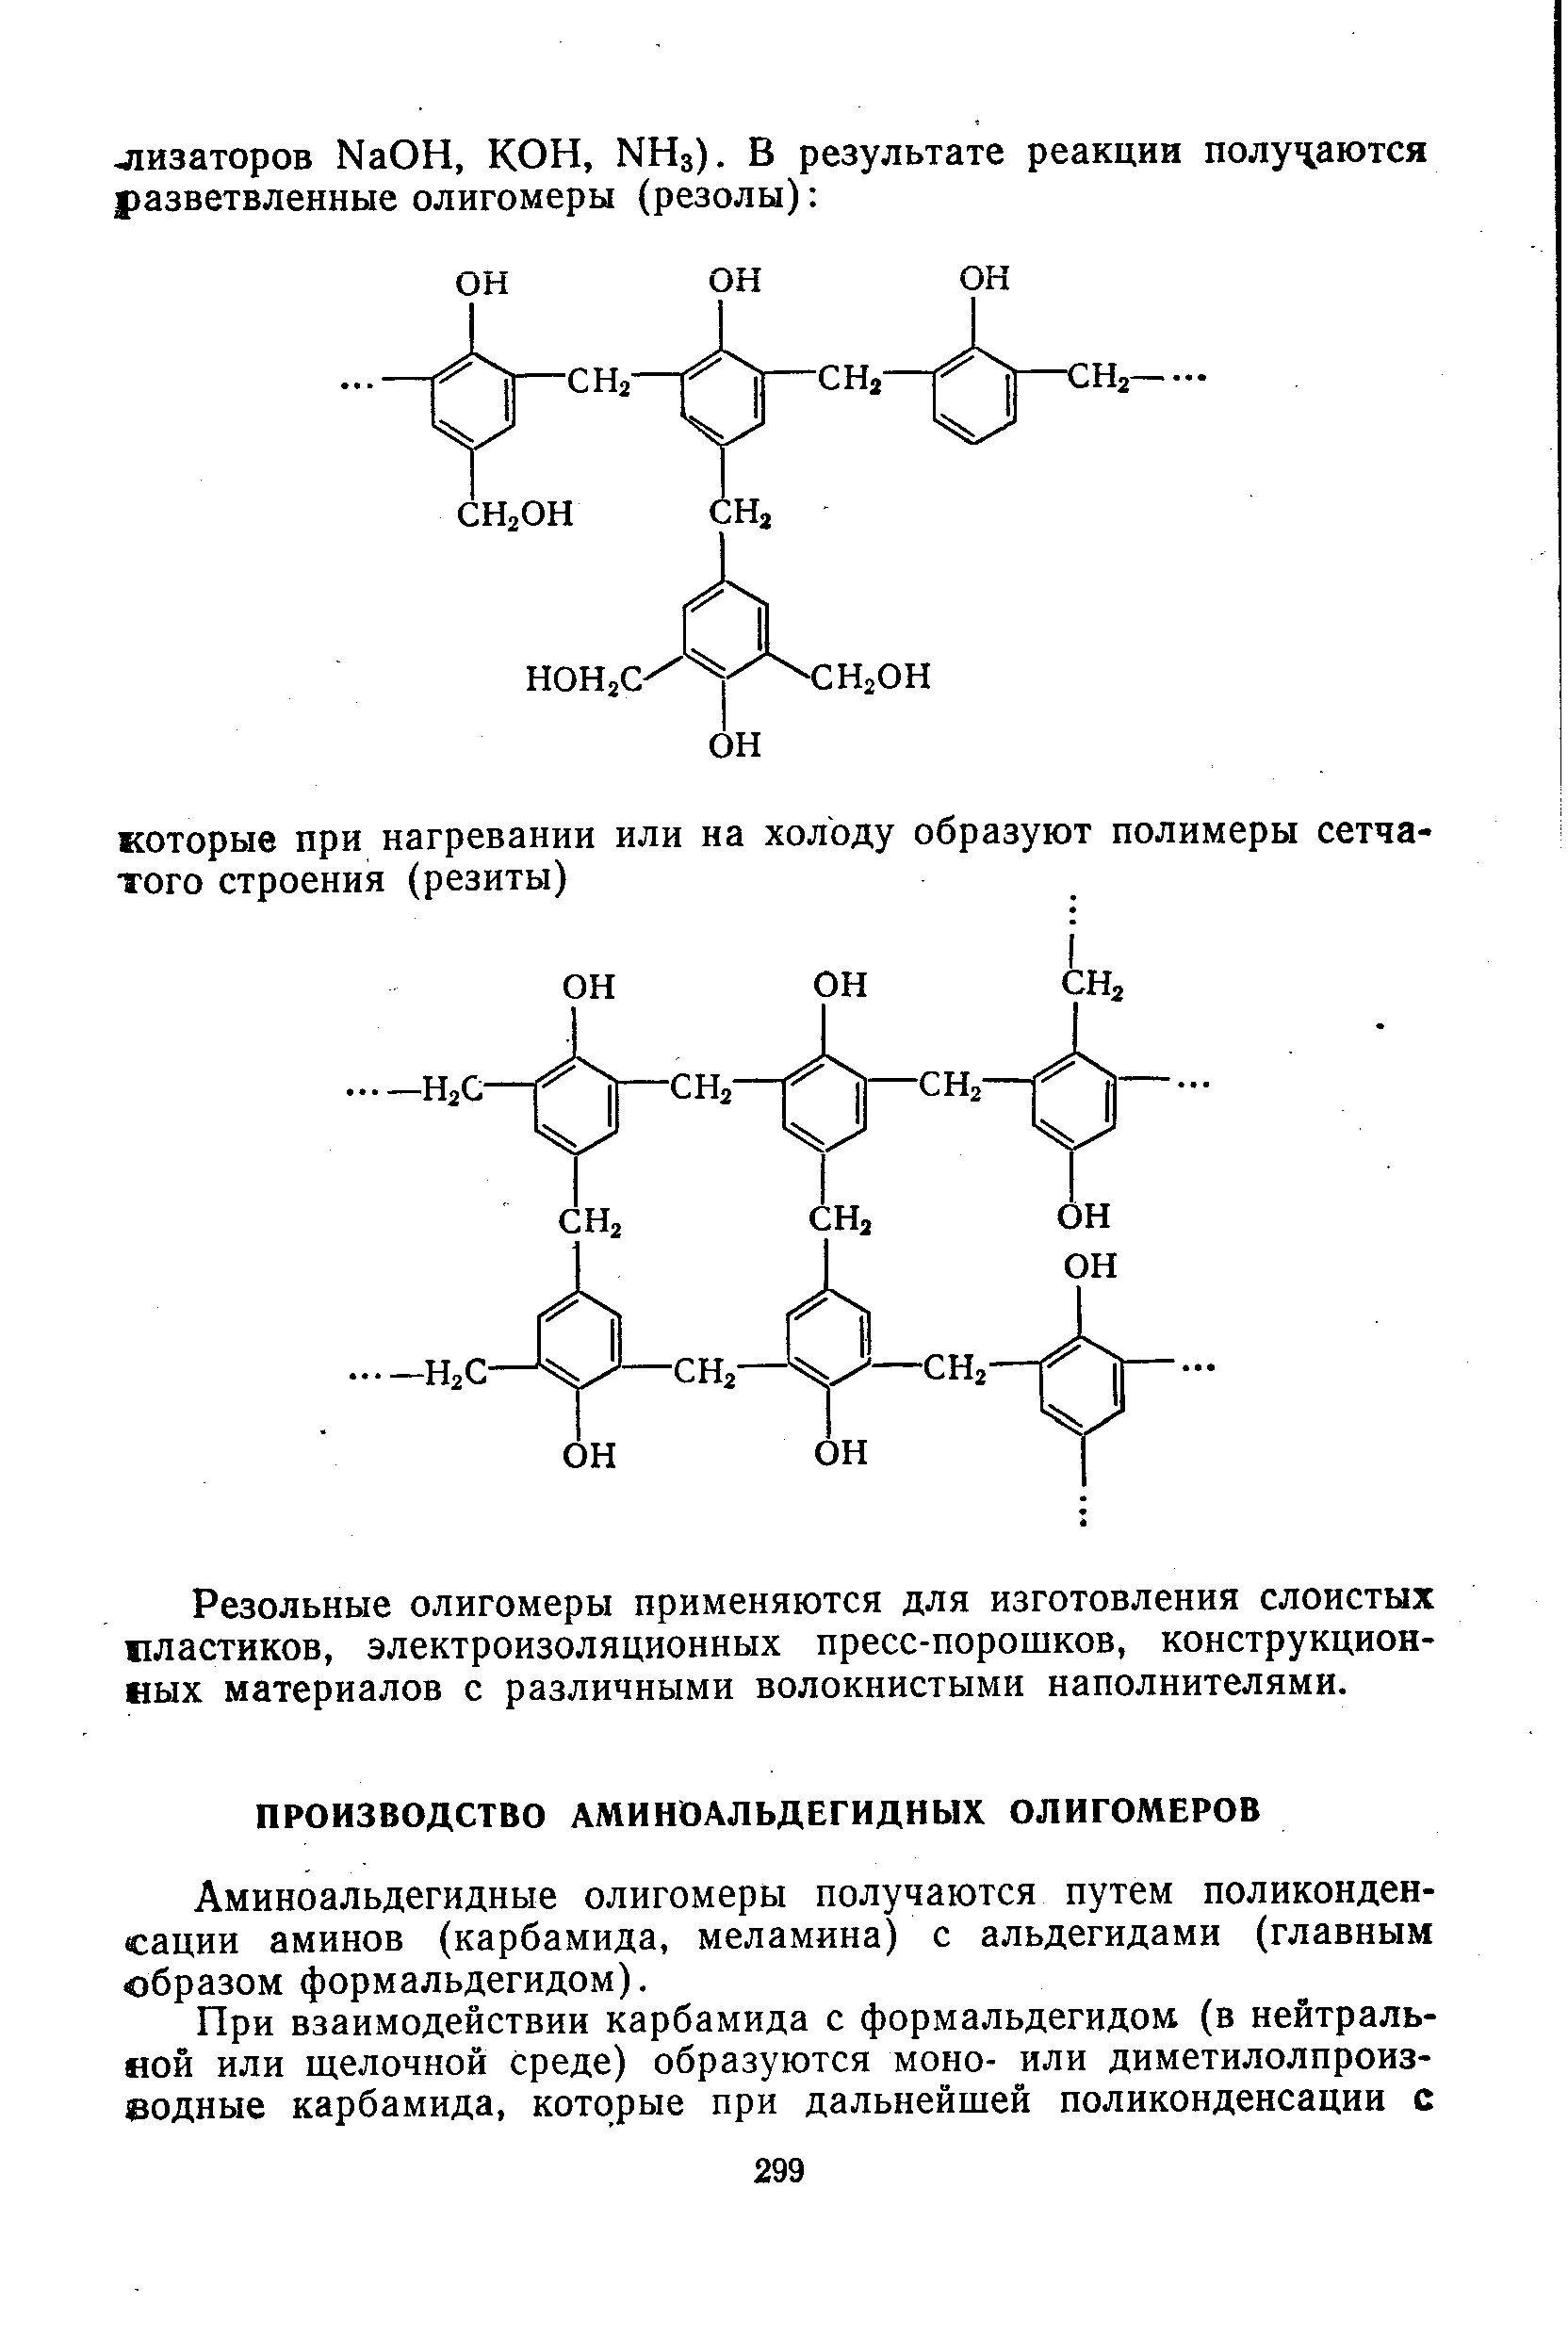 Аминоальдегидные олигомеры получаются путем поликонденсации аминов (карбамида, меламина) с альдегидами (главным образом формальдегидом).